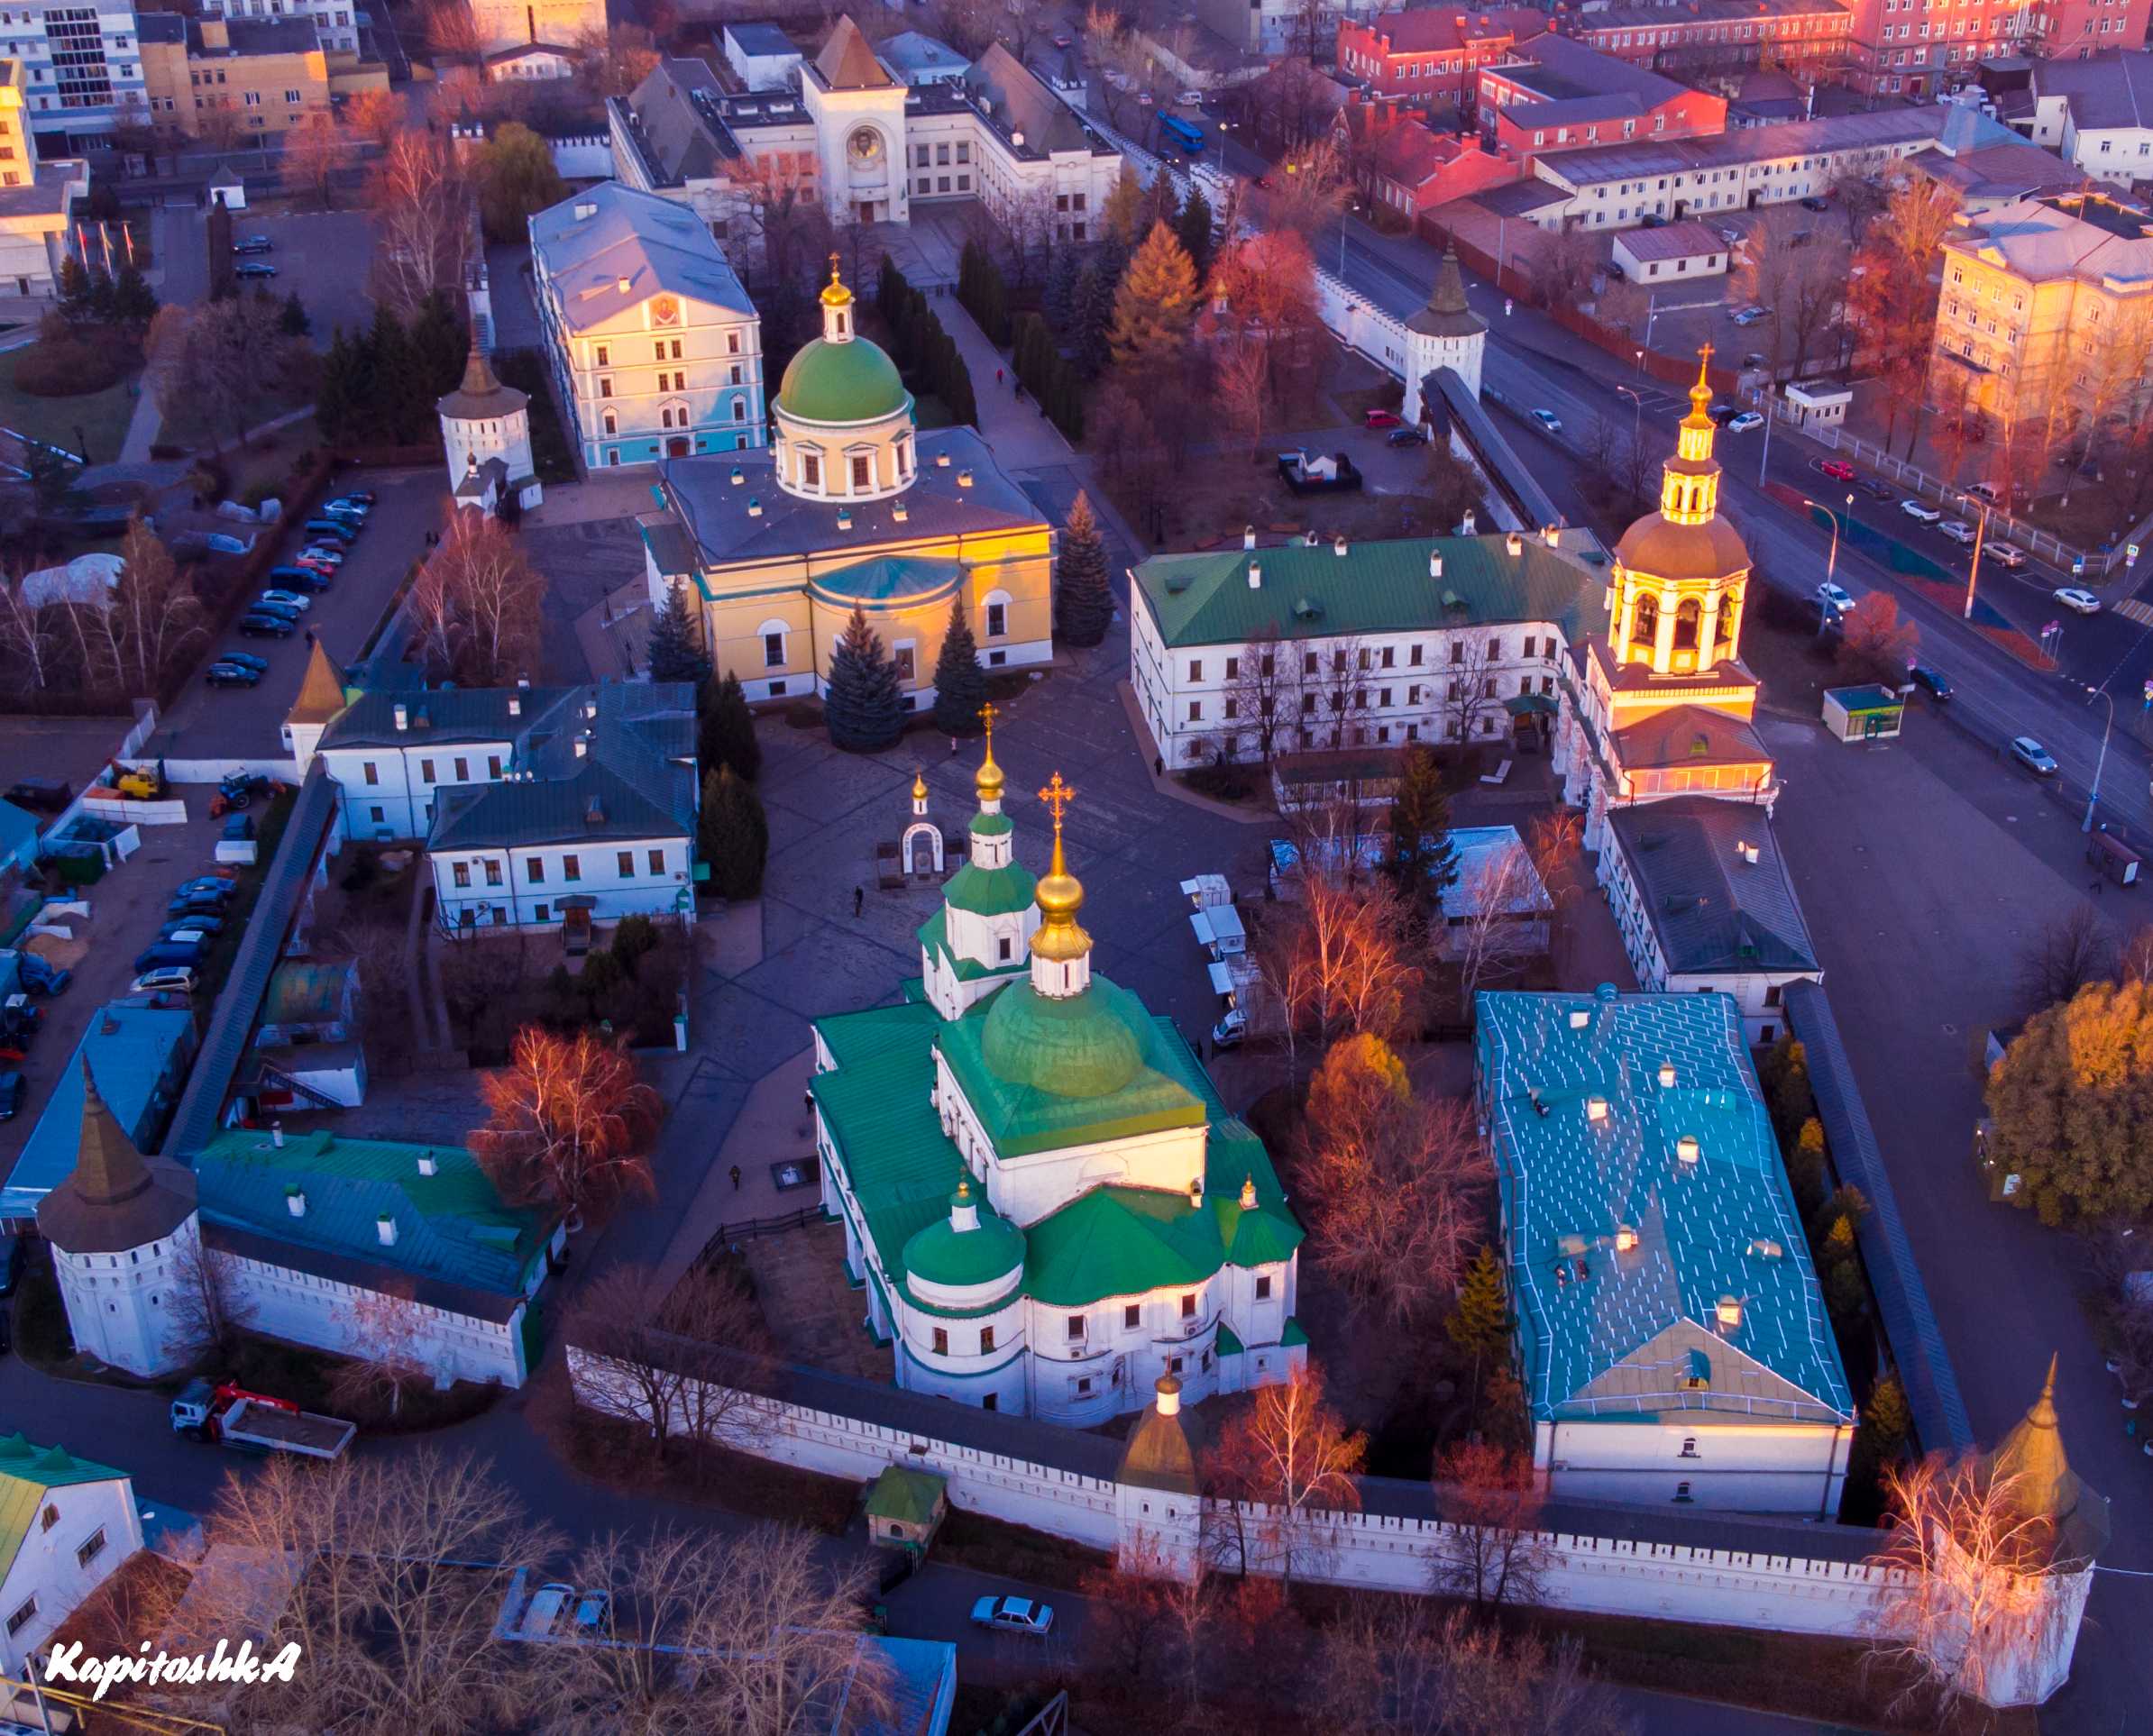 Данилов монастырь в москве